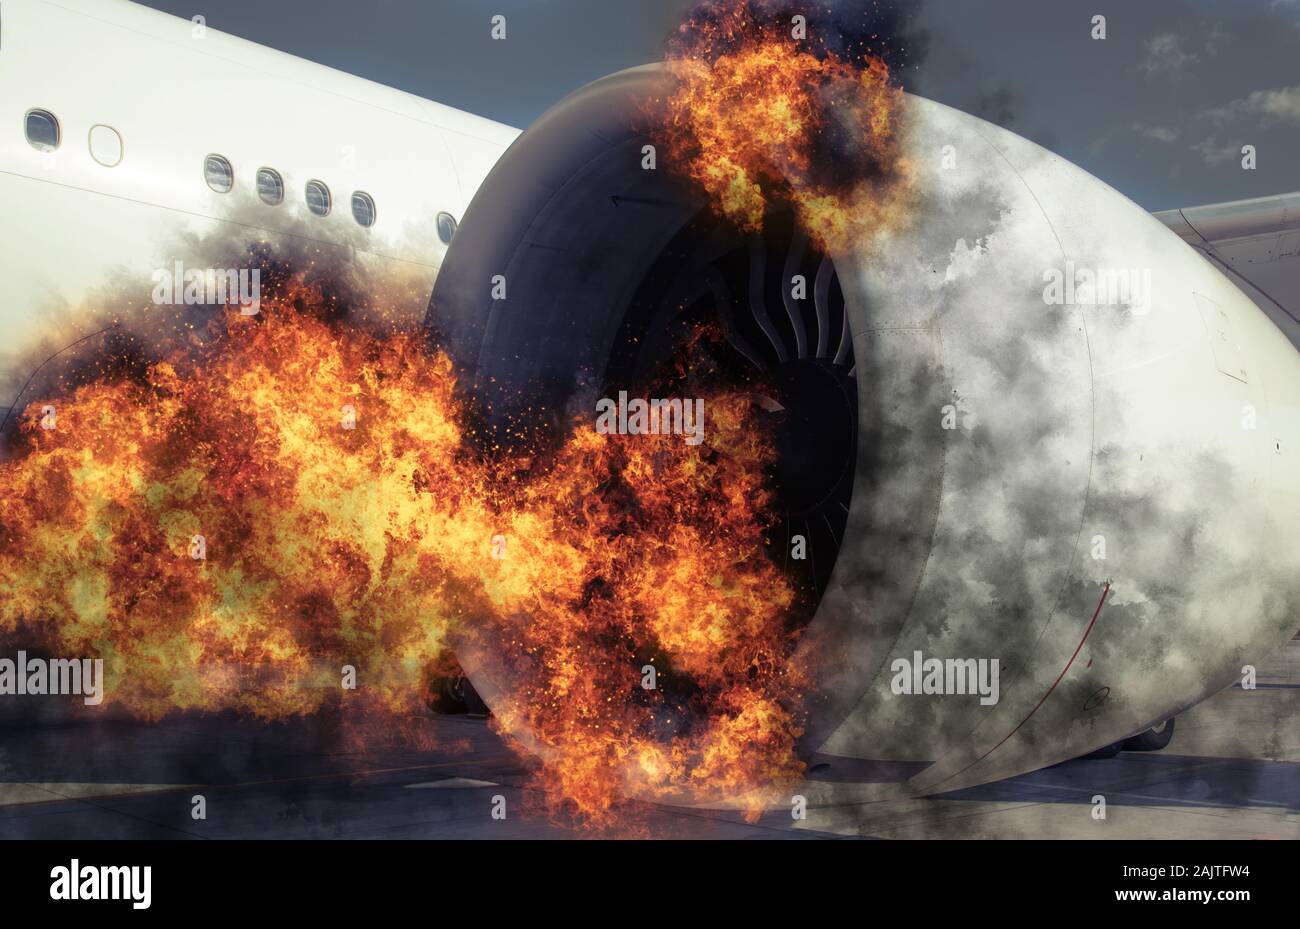 Plan de mise à la terre dans l'aéroport connaît une défaillance catastrophique dû à l'incendie, le feu et la fumée du moteur Banque D'Images